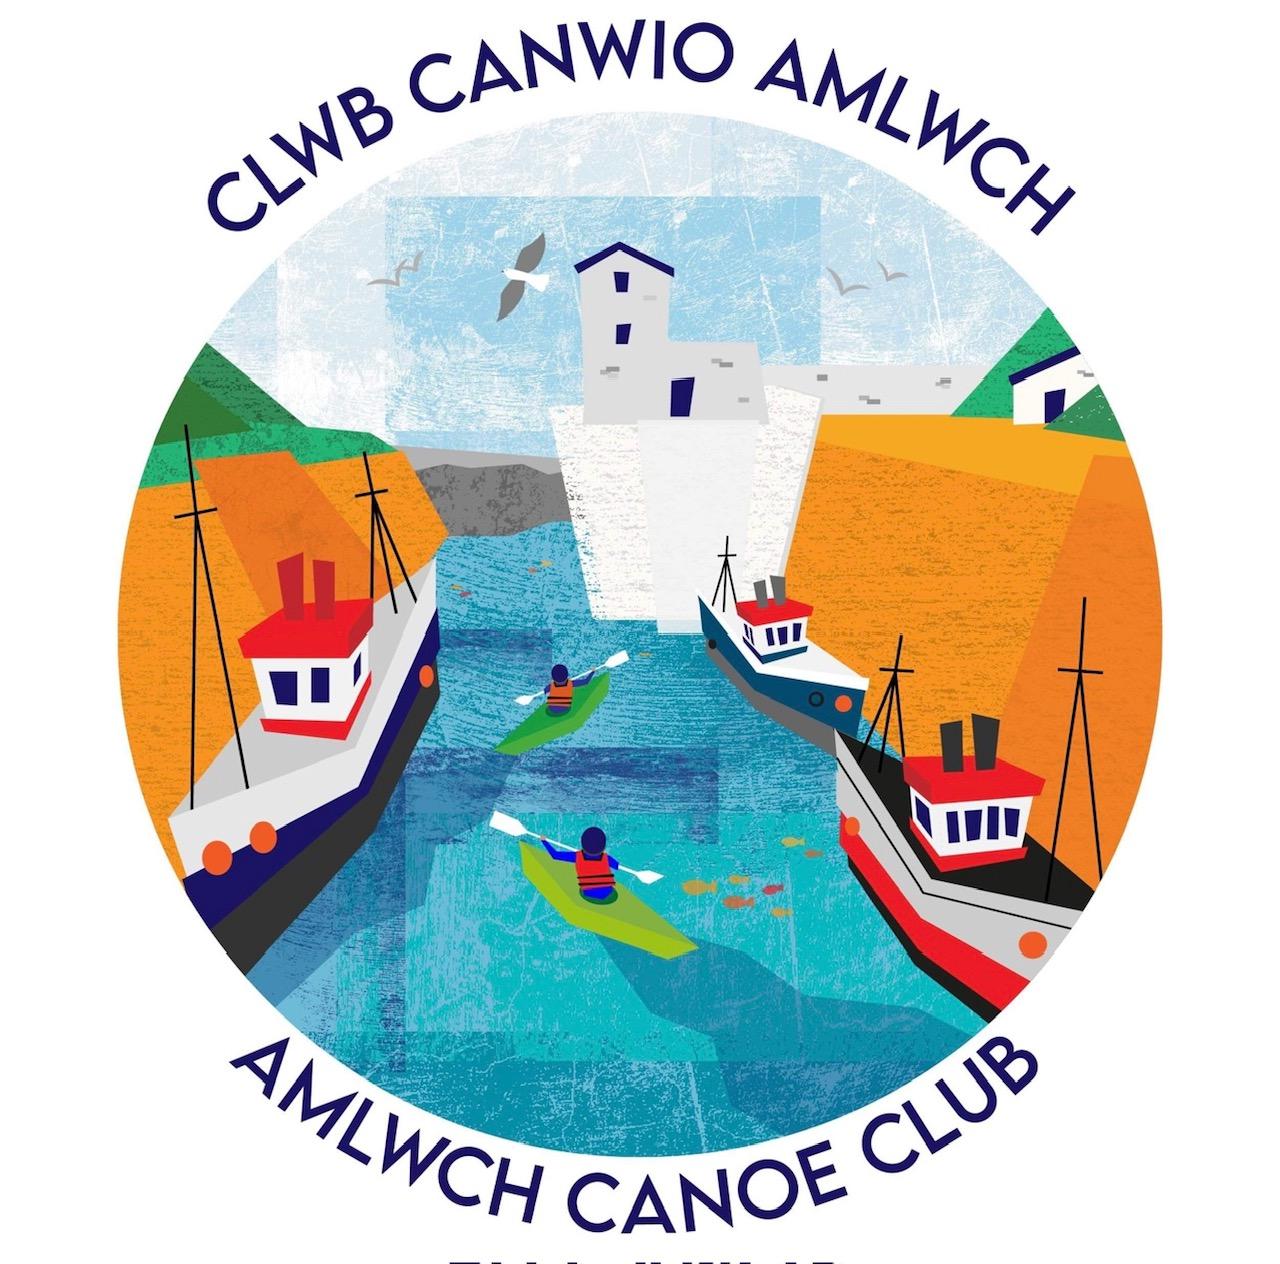 Clwb Canwio Amlwch